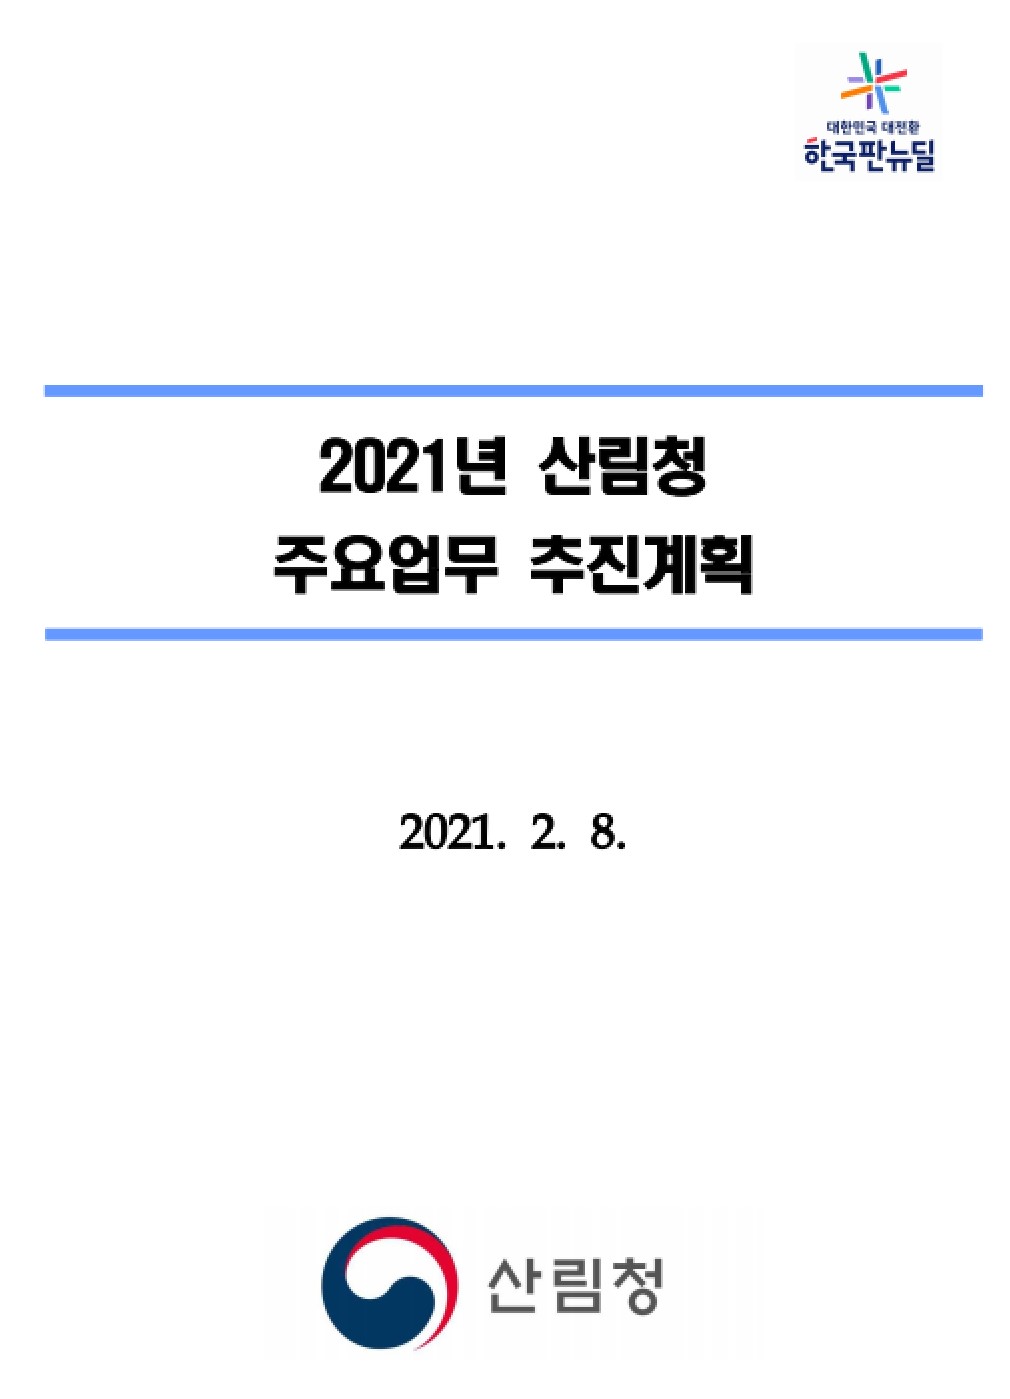 2021 주요업무계획 표지